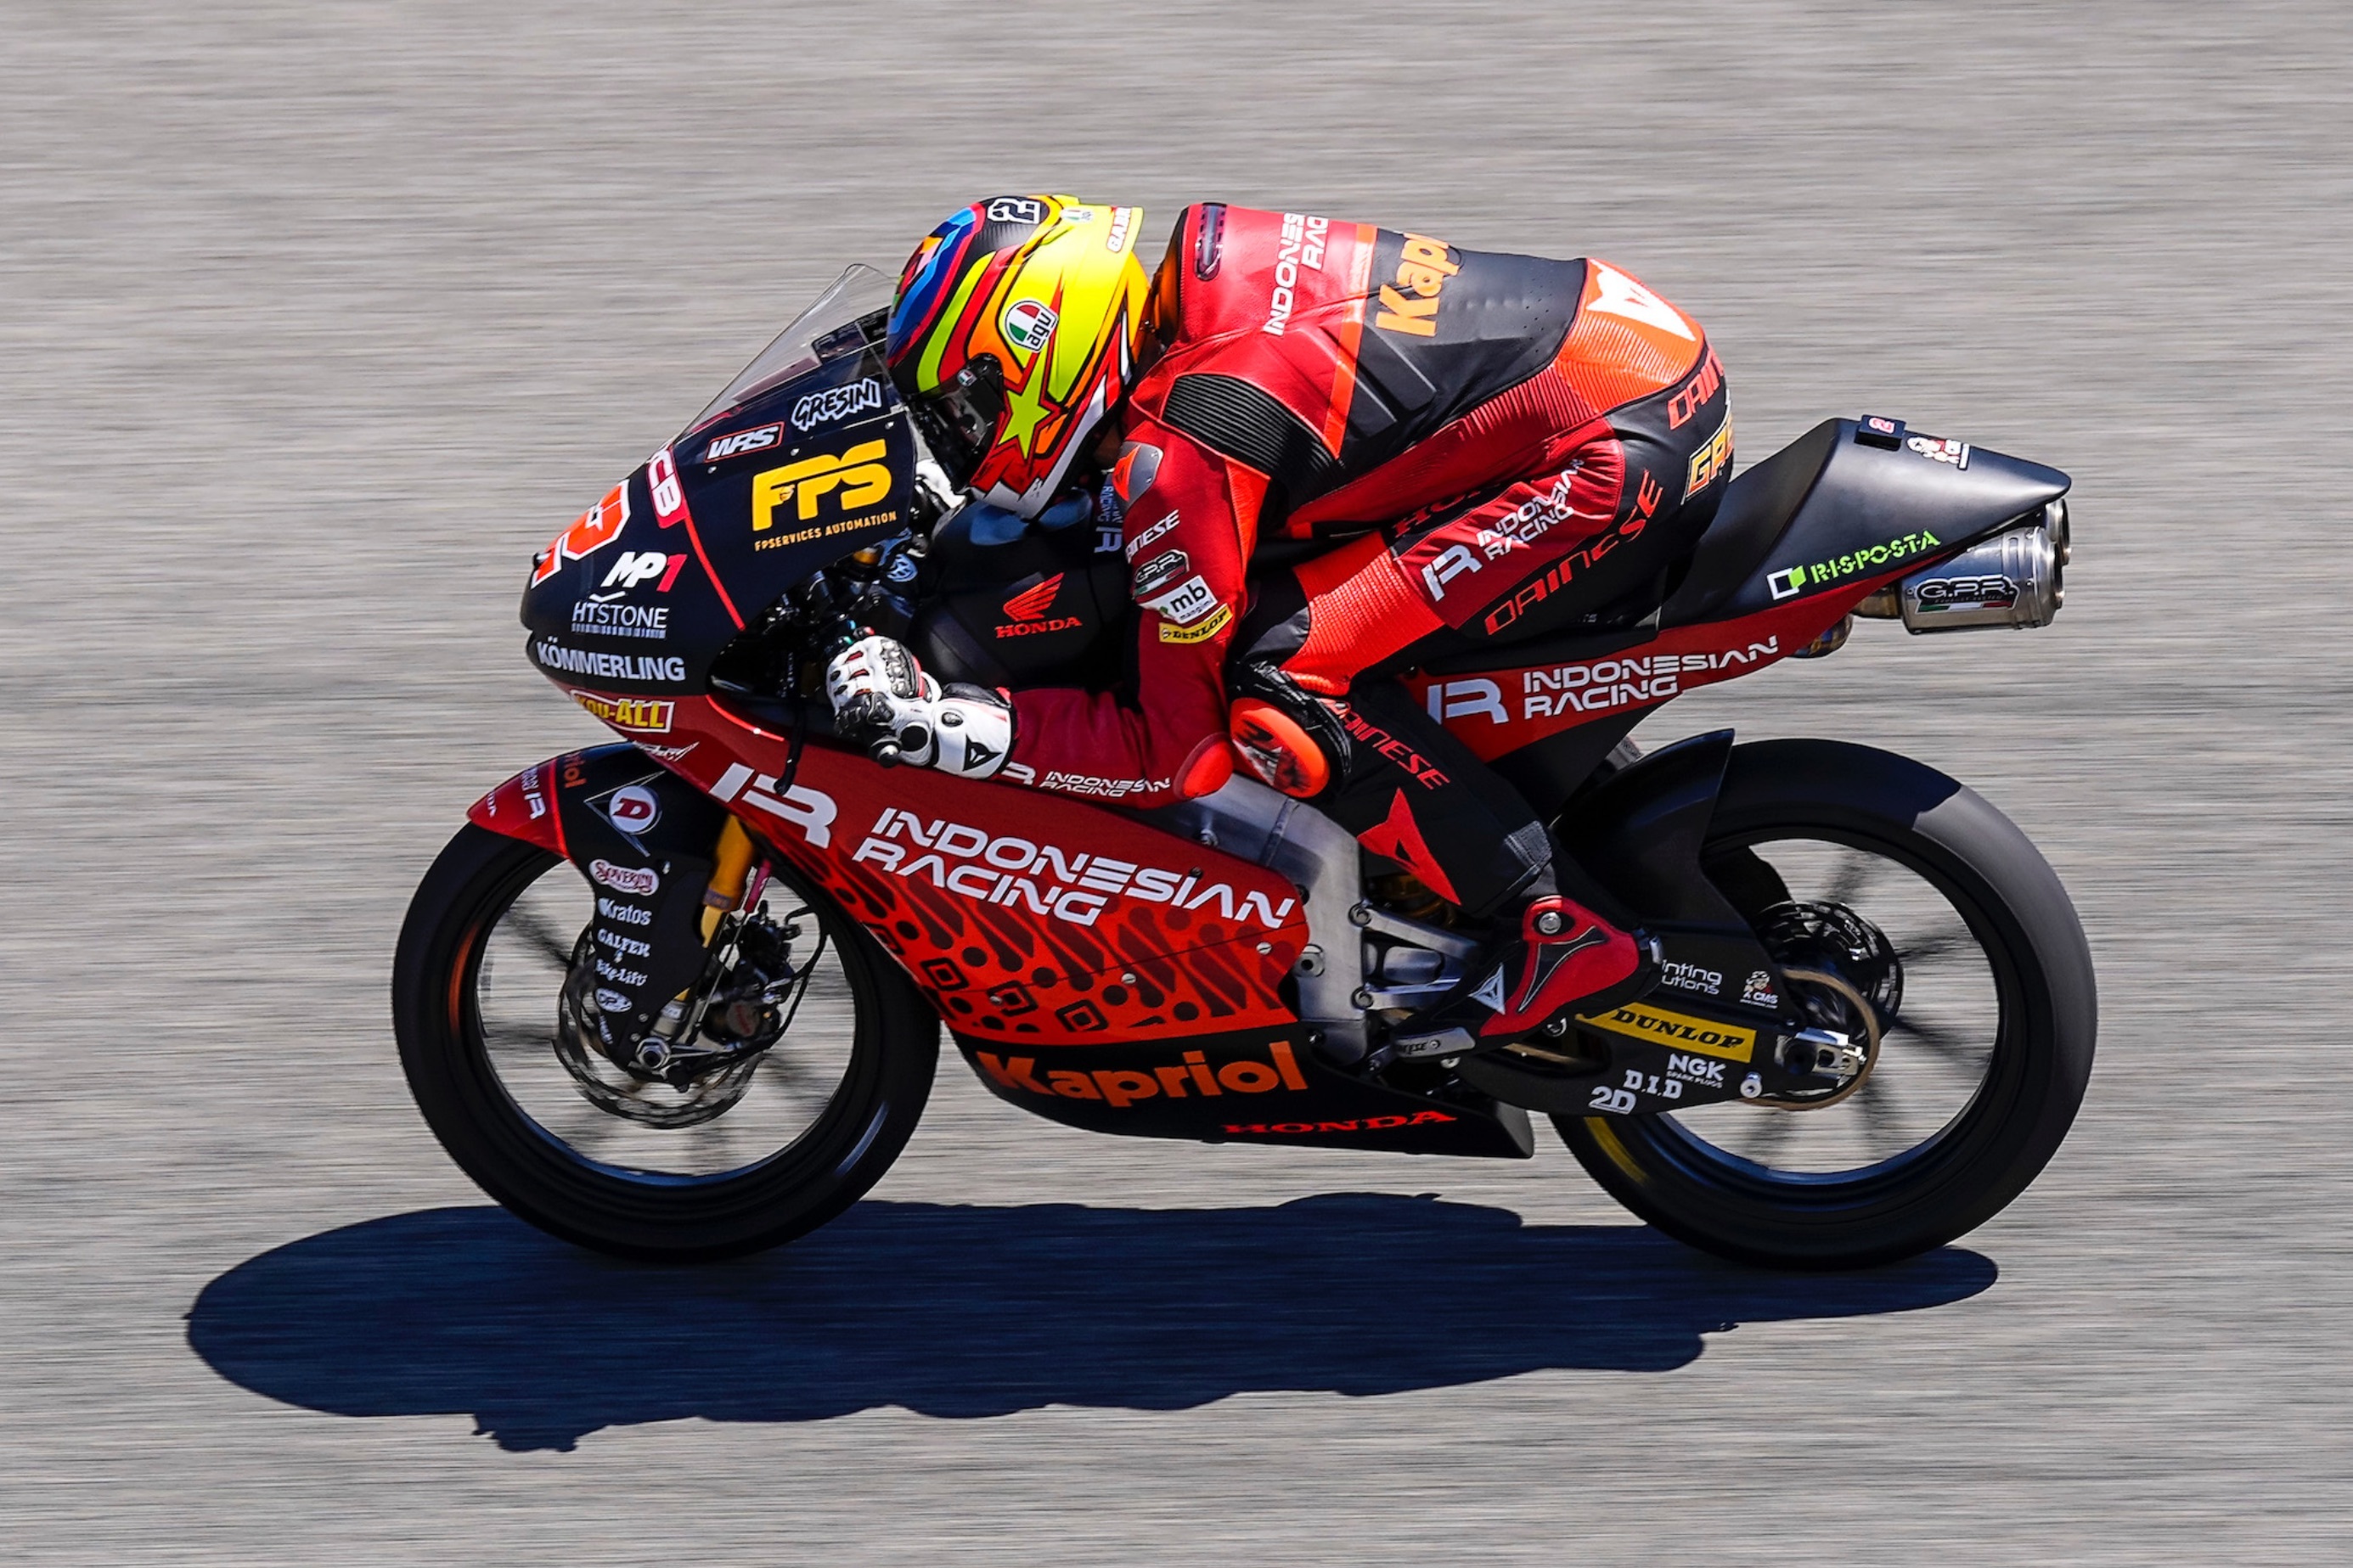 Moto3 GP Spanyol 2021: Sempat Bermasalah, Rider Indonesian Racing Gresini Dapat Start Apik